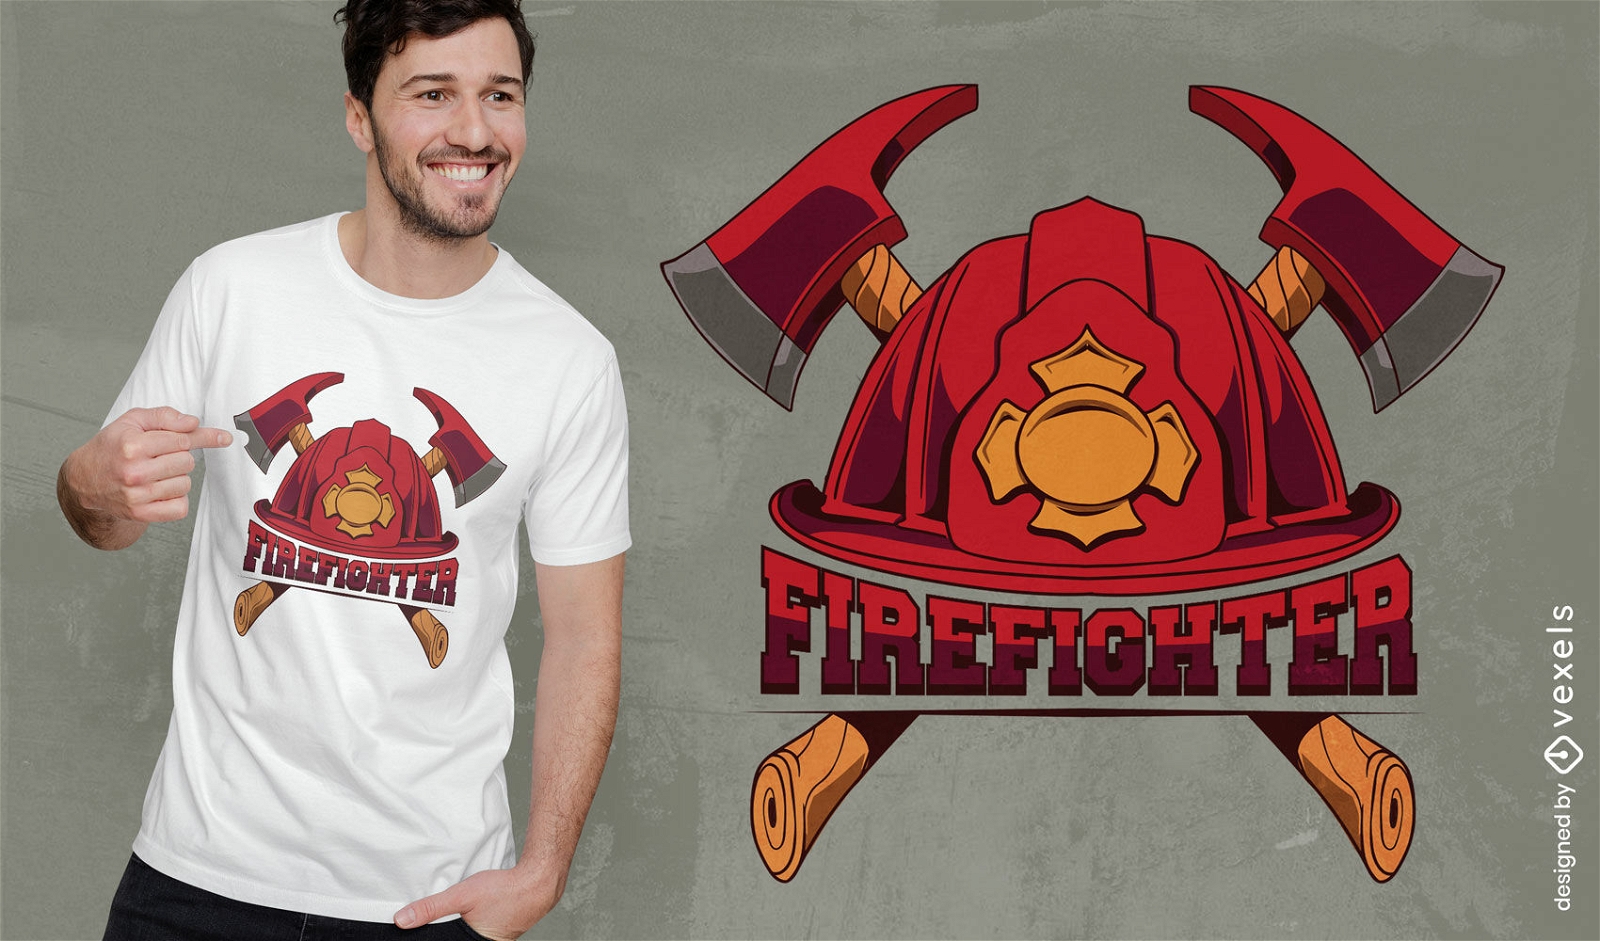 Firefighter elements t-shirt design